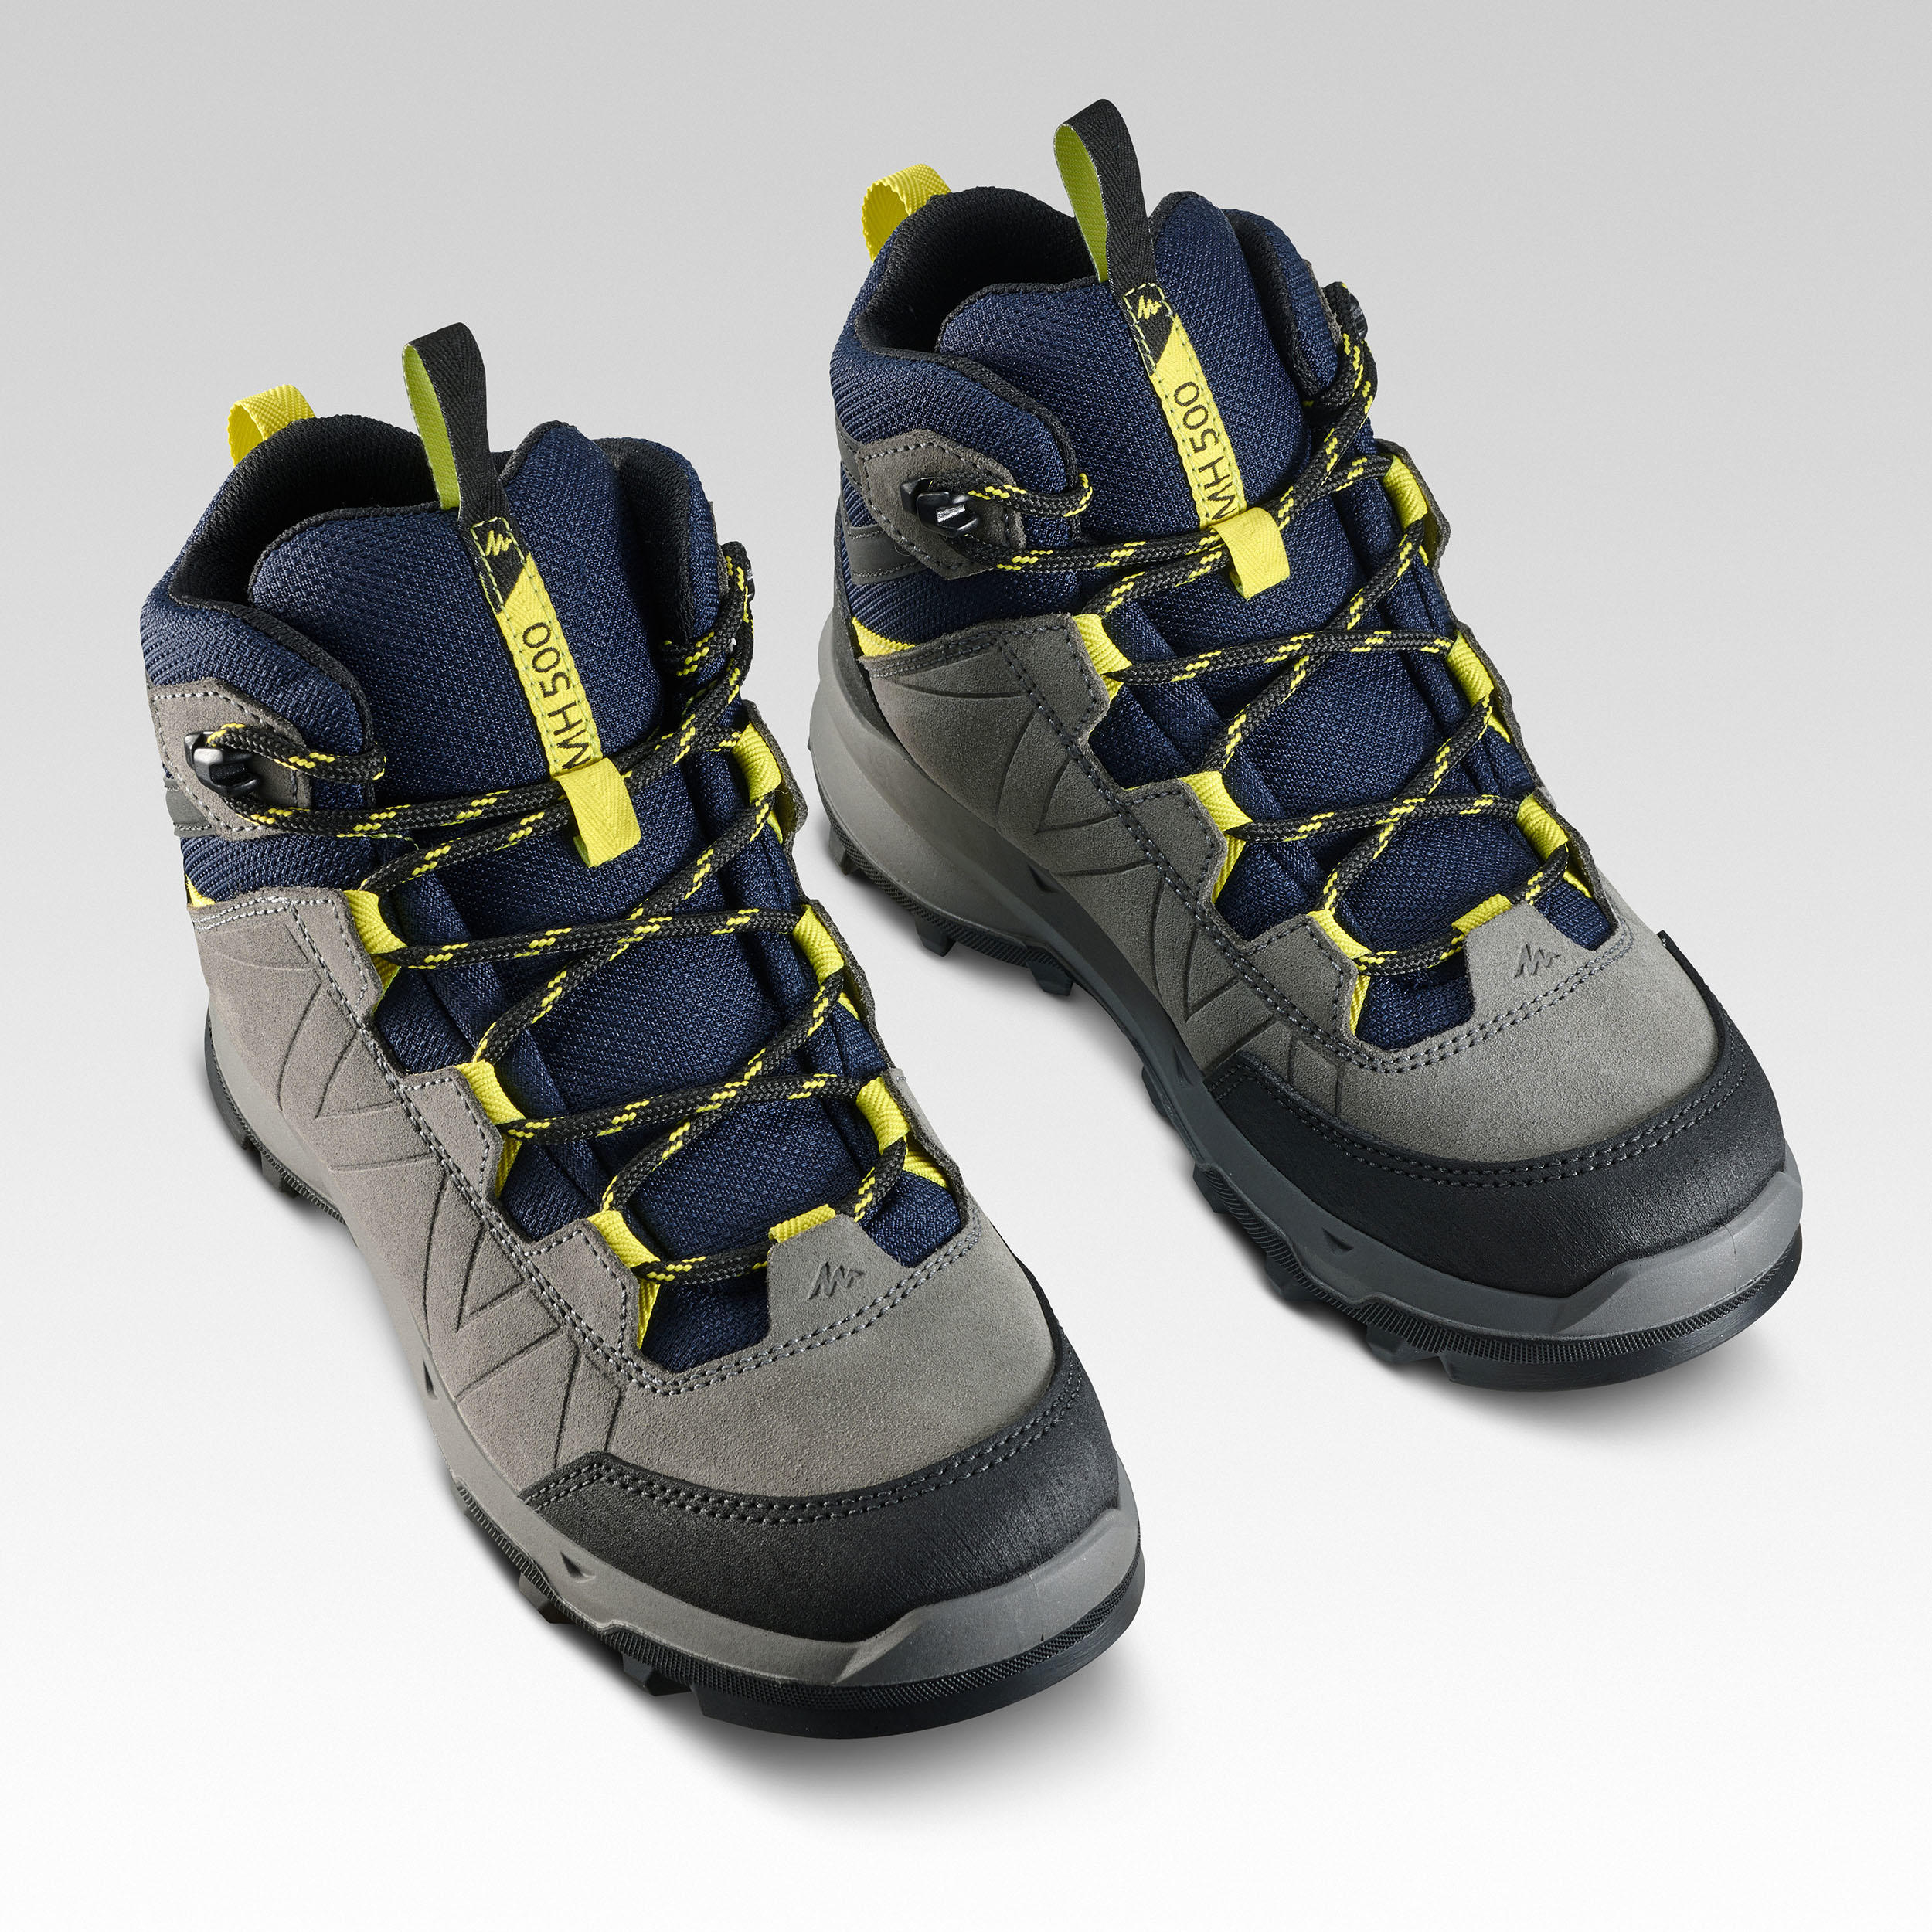 Chaussures de randonnée imperméables enfant – MH 500 - QUECHUA